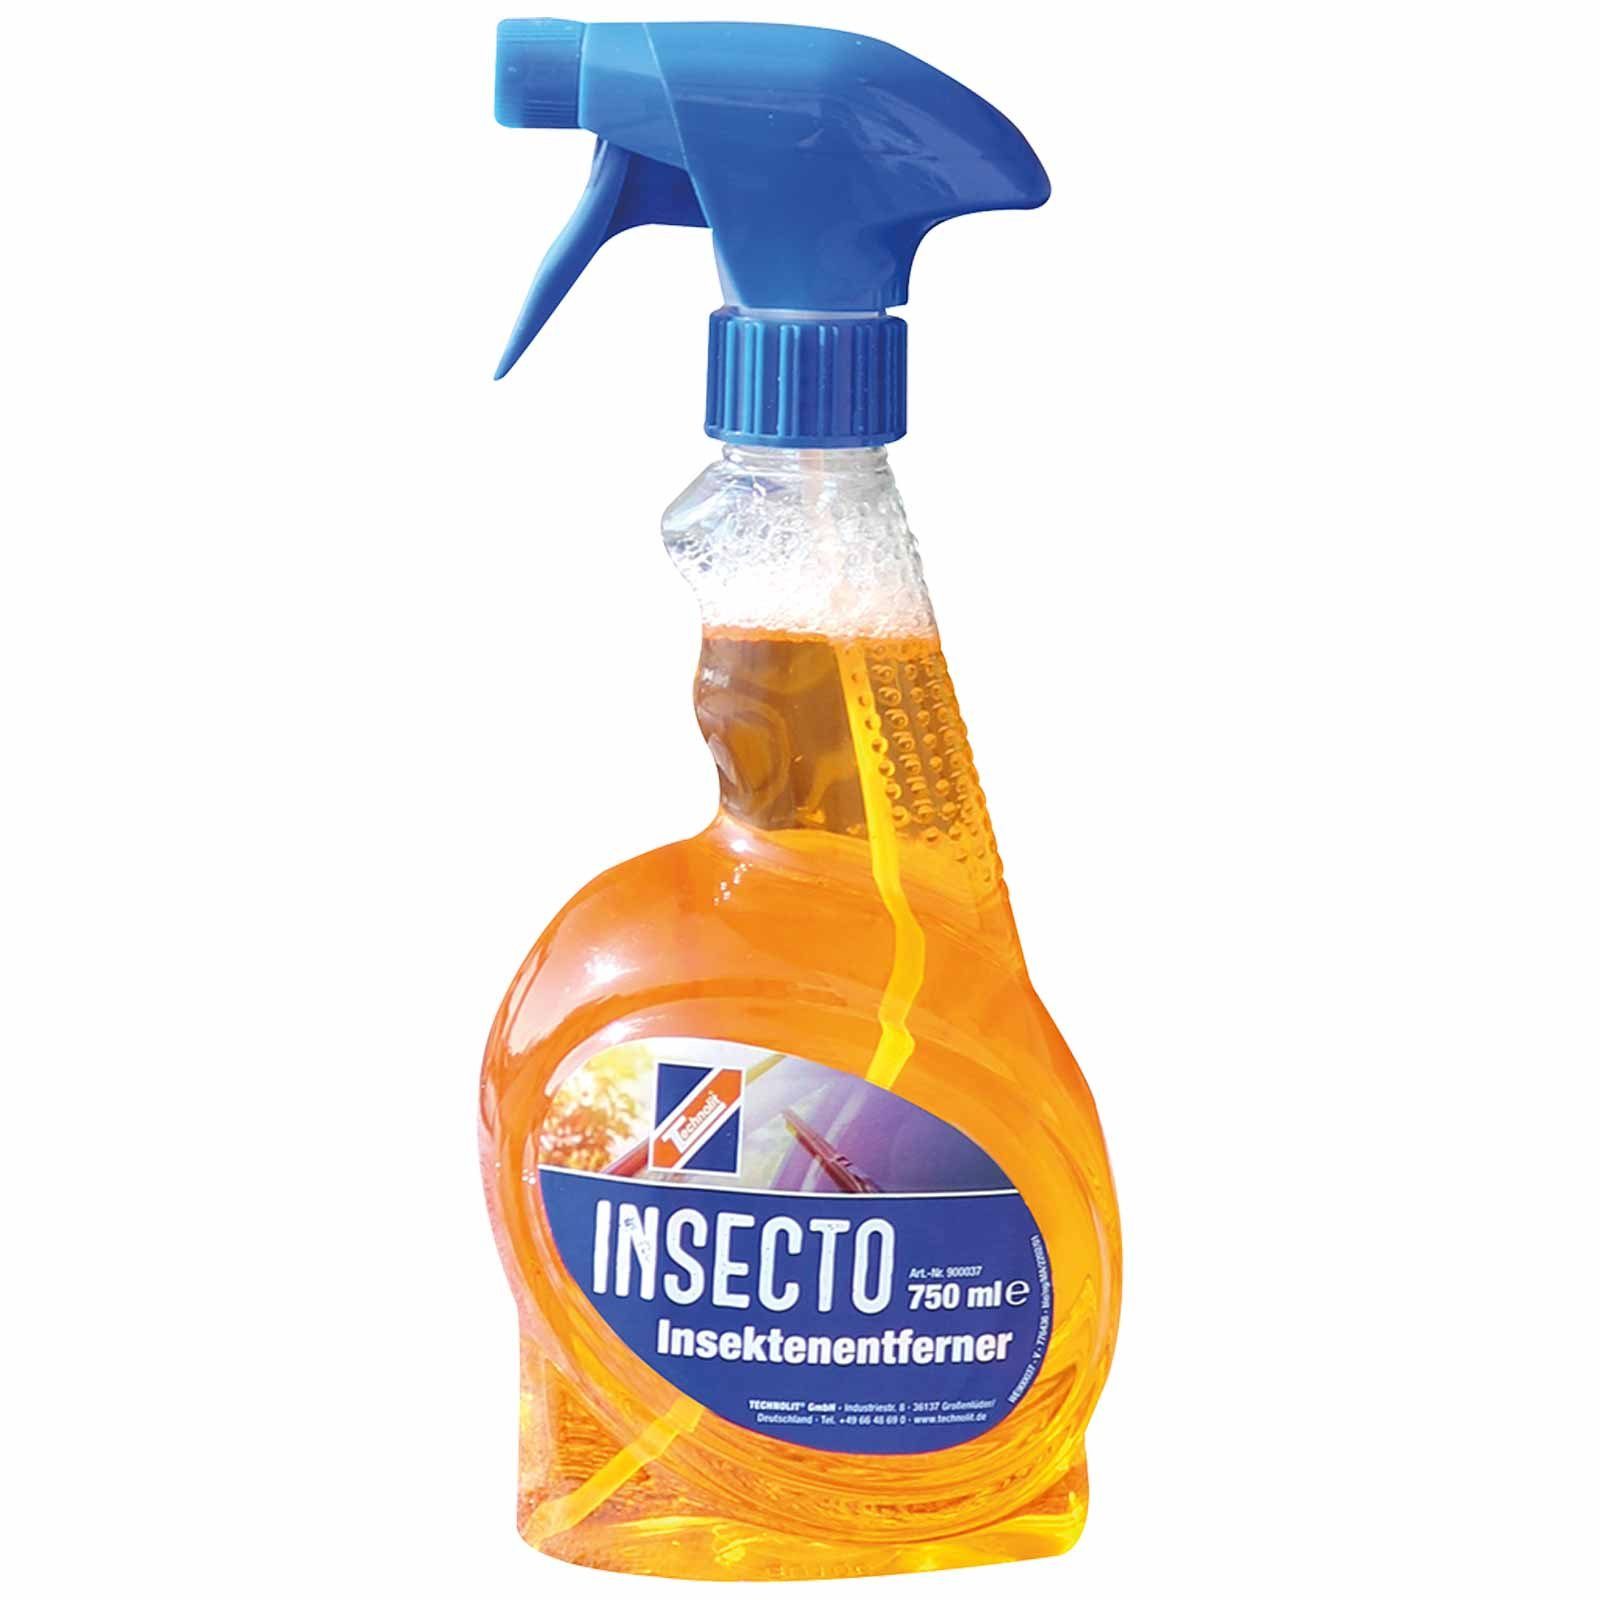 TECHNOLIT® Insektenentferner Insecto Insektenentferner